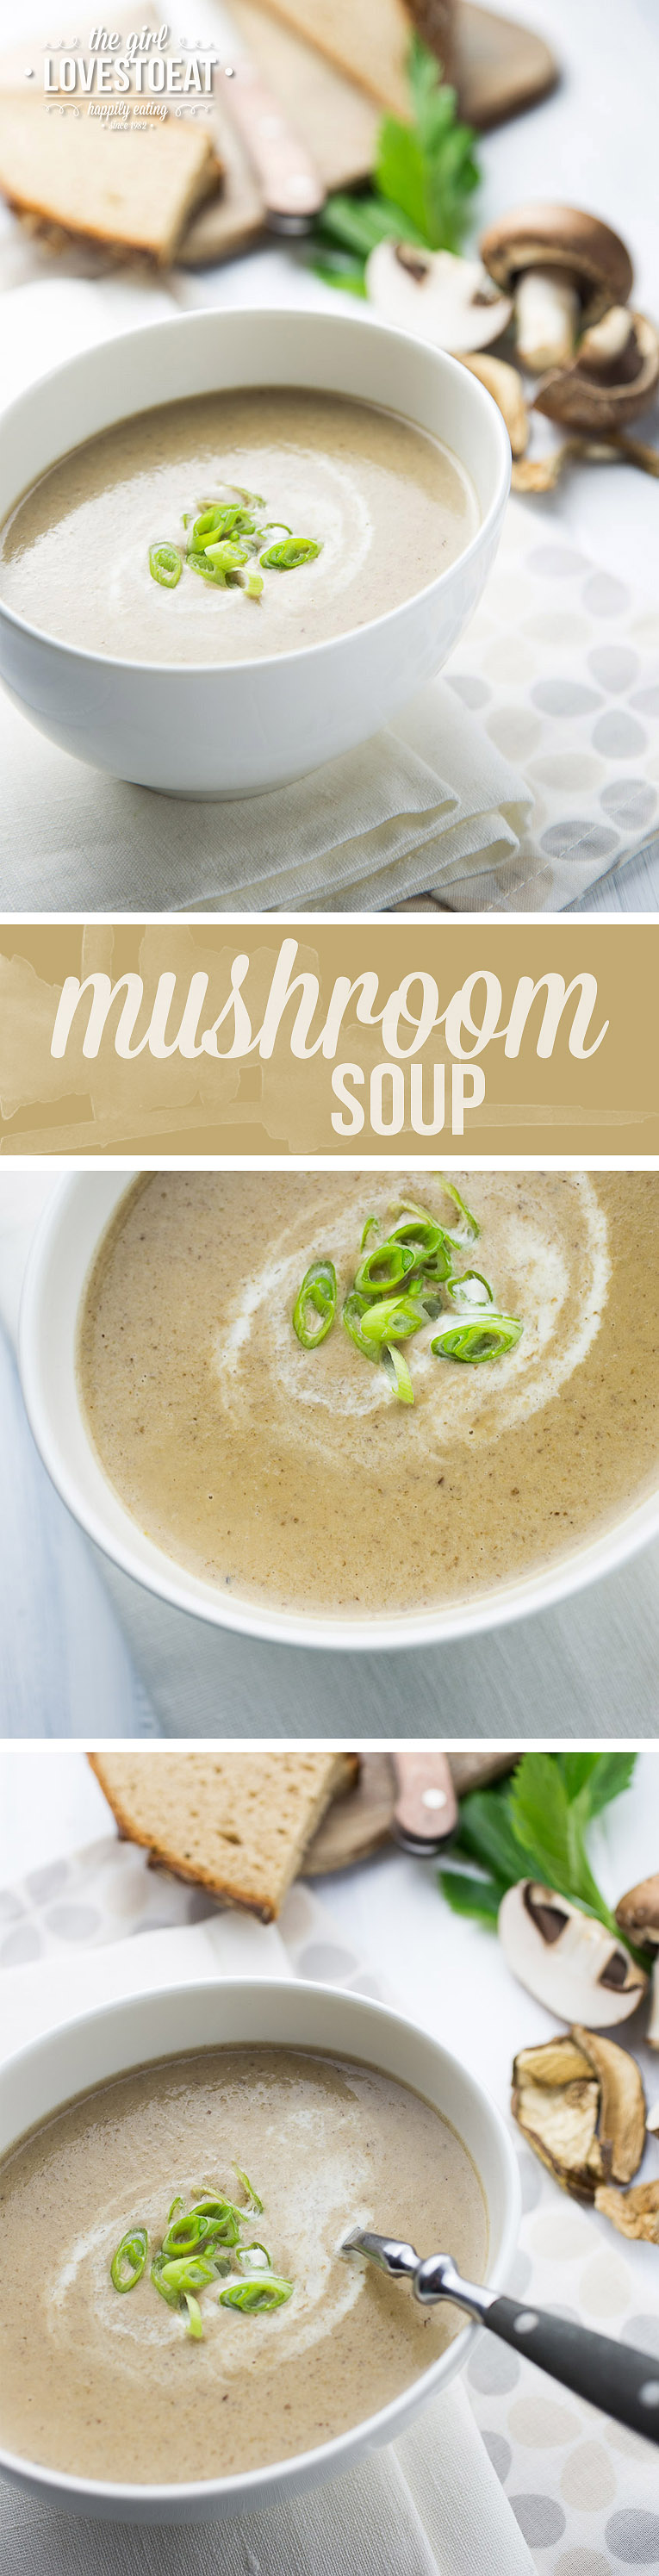 Creamy Mushroom Soup {thegirllovestoeat.com}